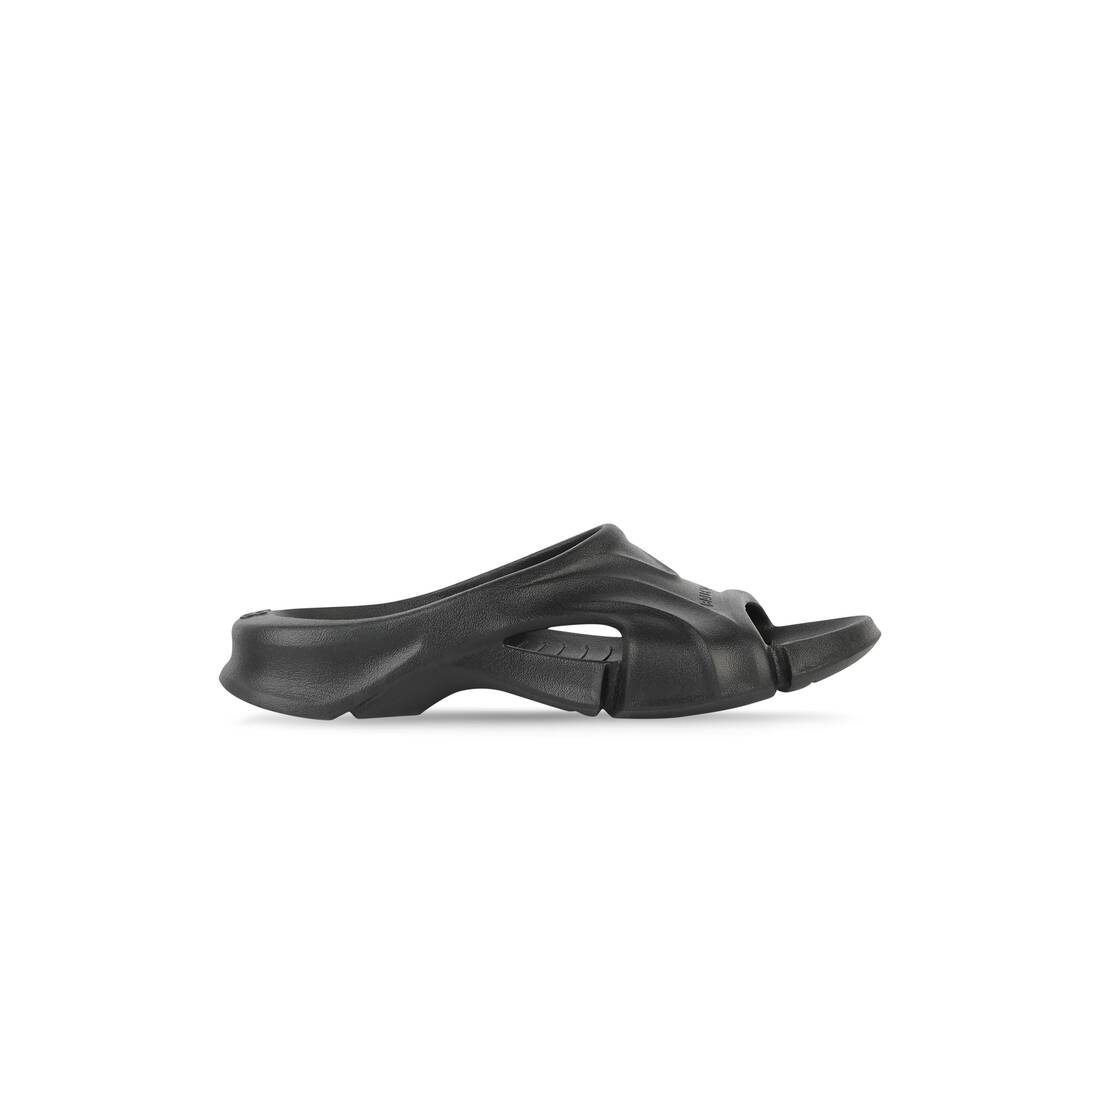 Women's Mold Slide Sandal in Black